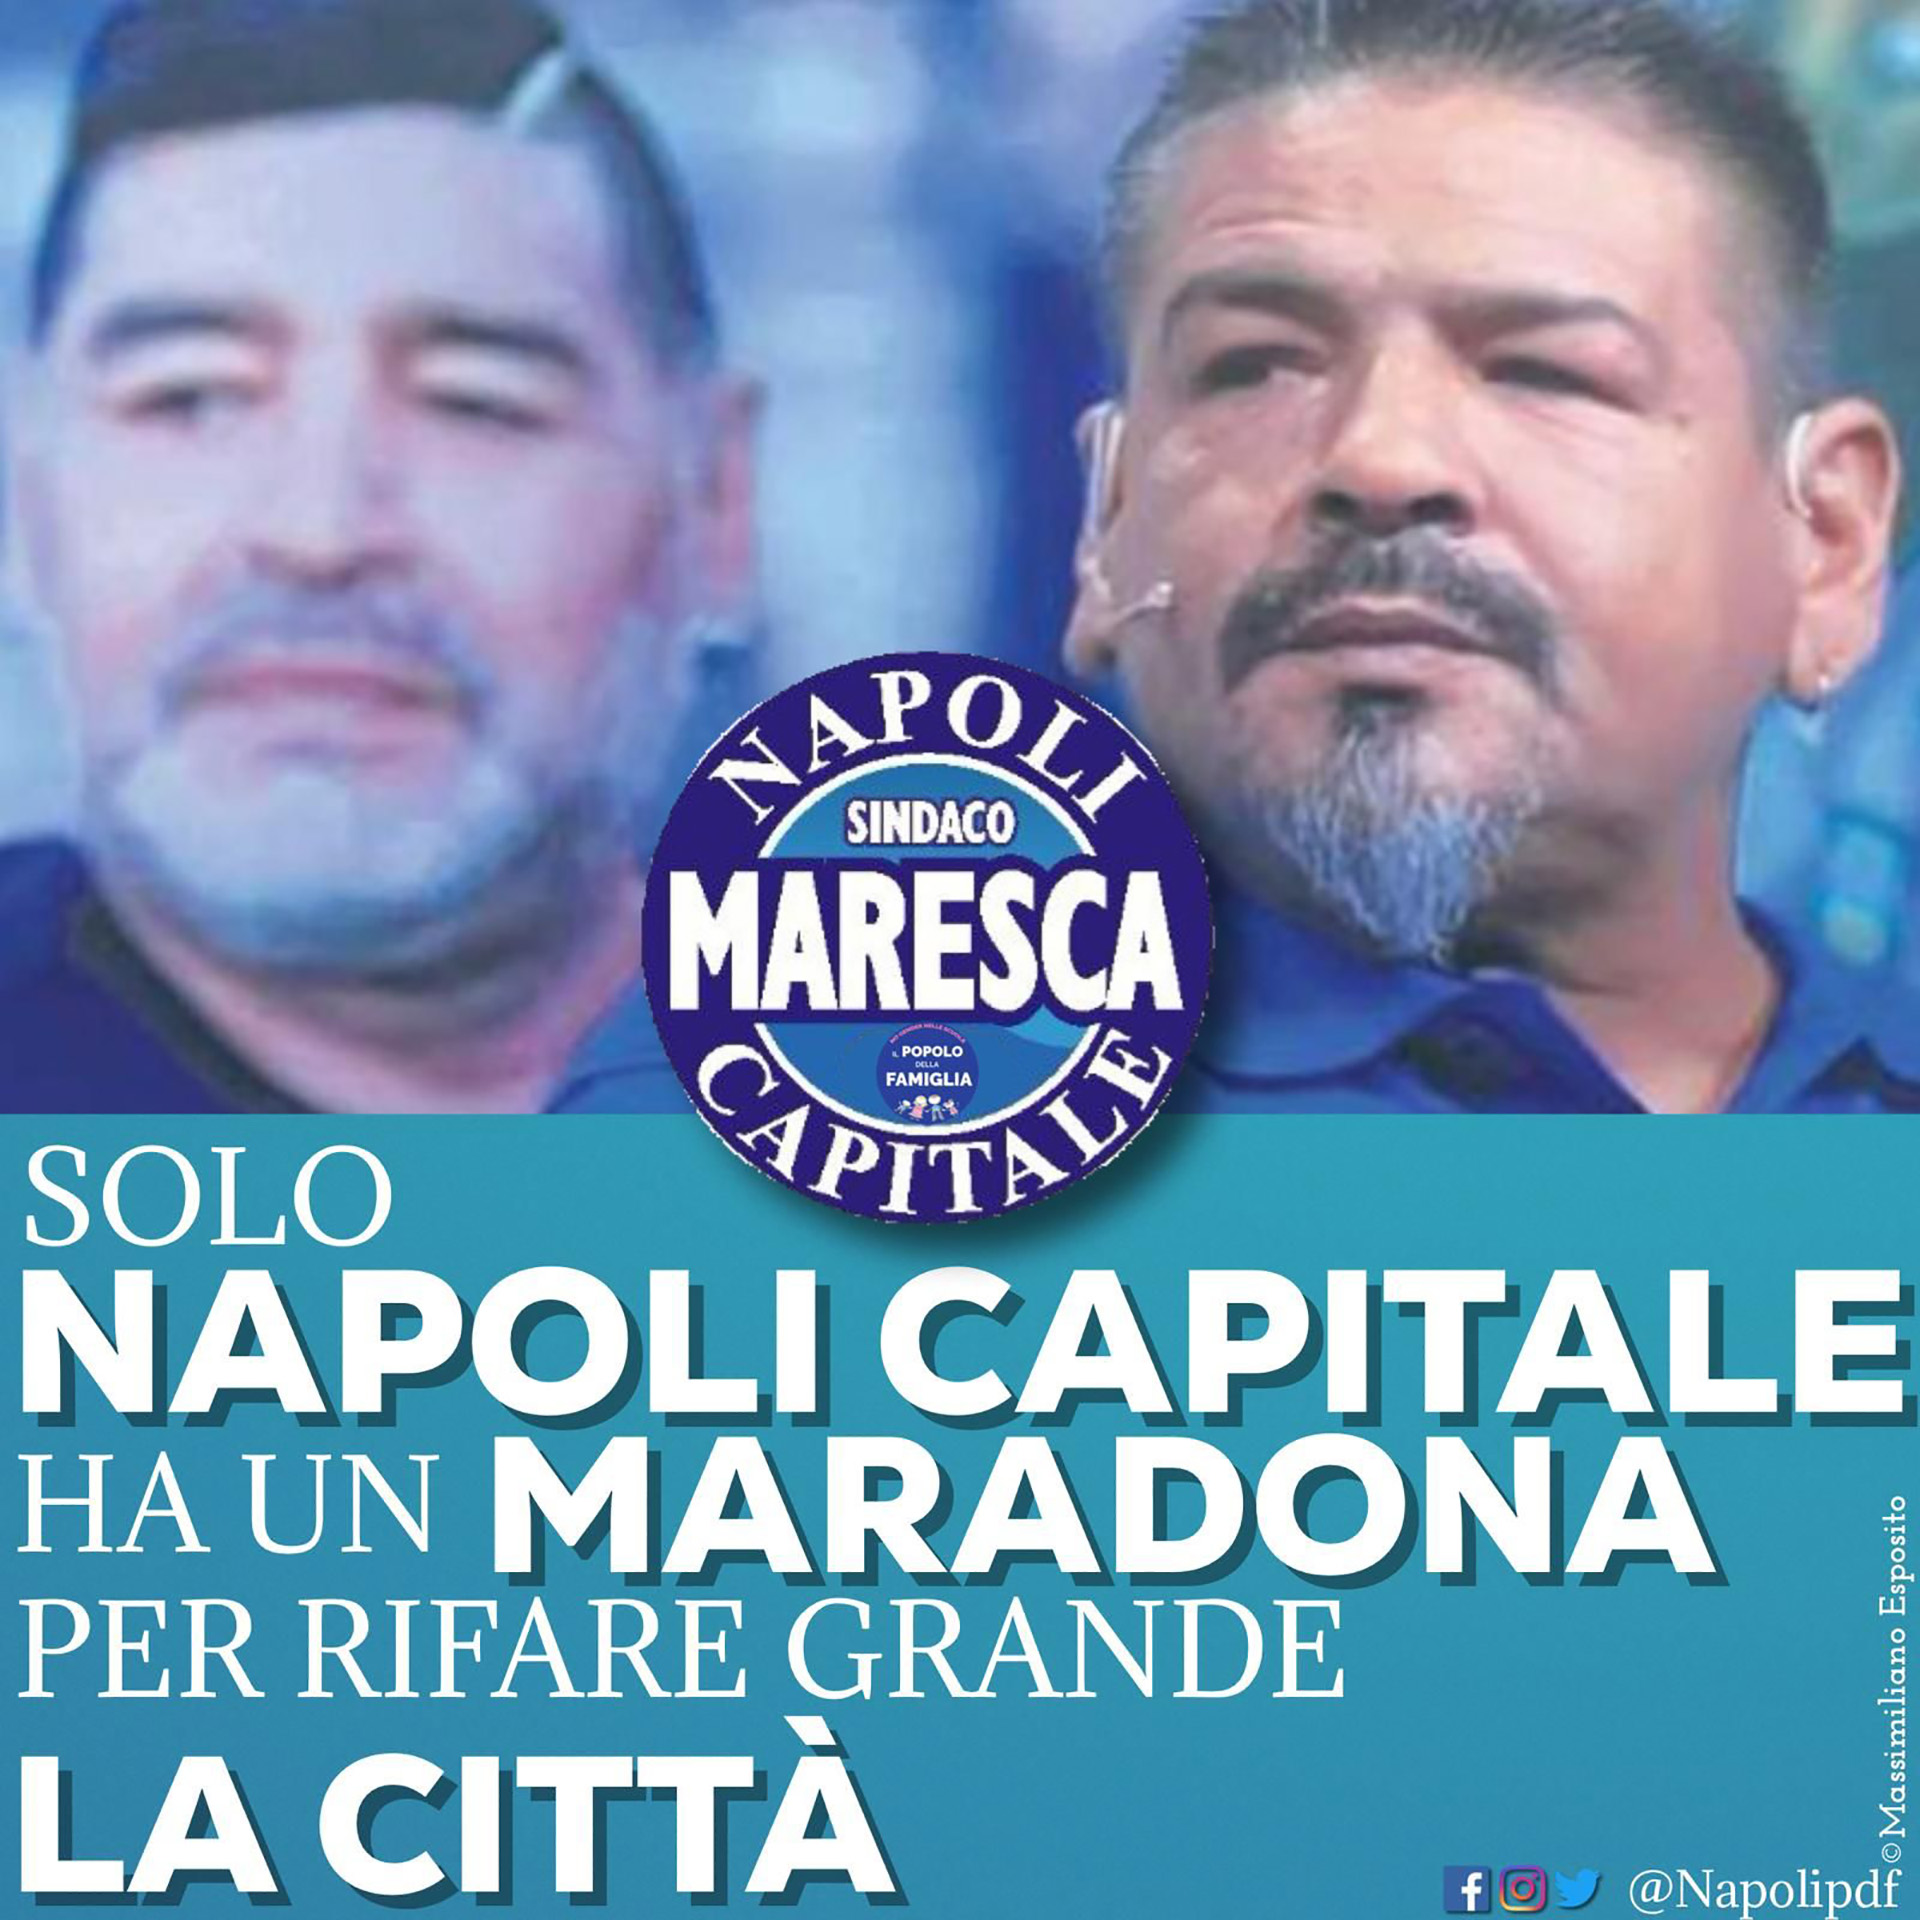 El afiche que presentó hoy la coalición que promueve la postulación del Turco Maradona